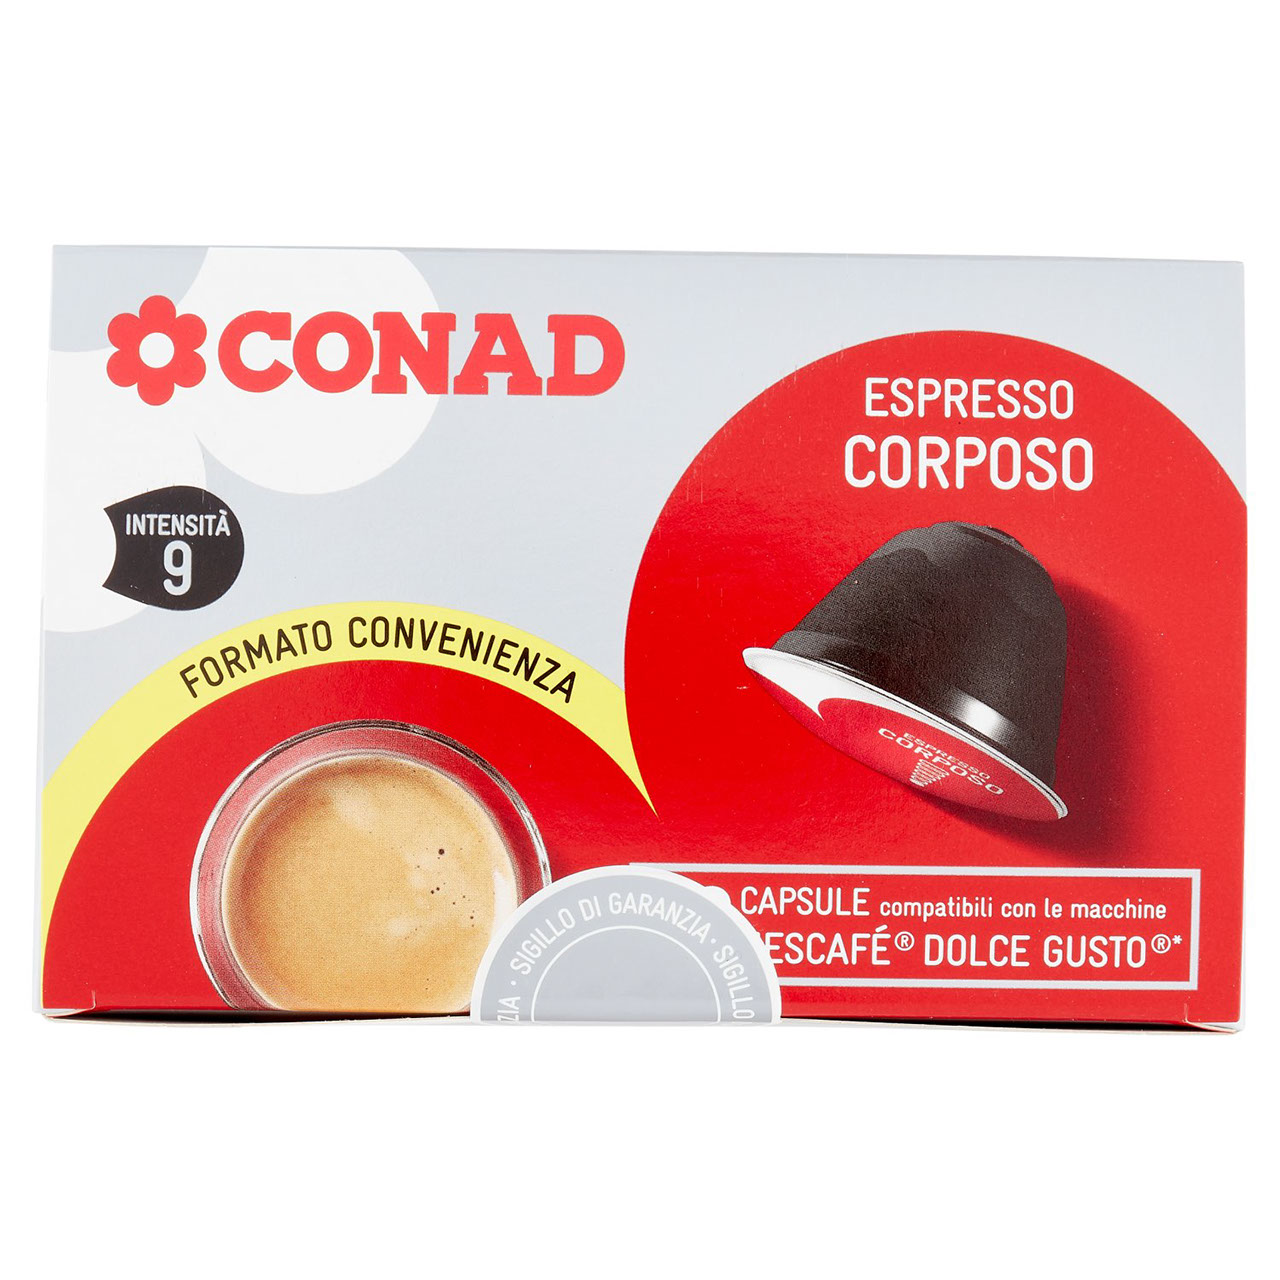 Espresso Corposo capsule Nescafè Dolce Gusto Conad